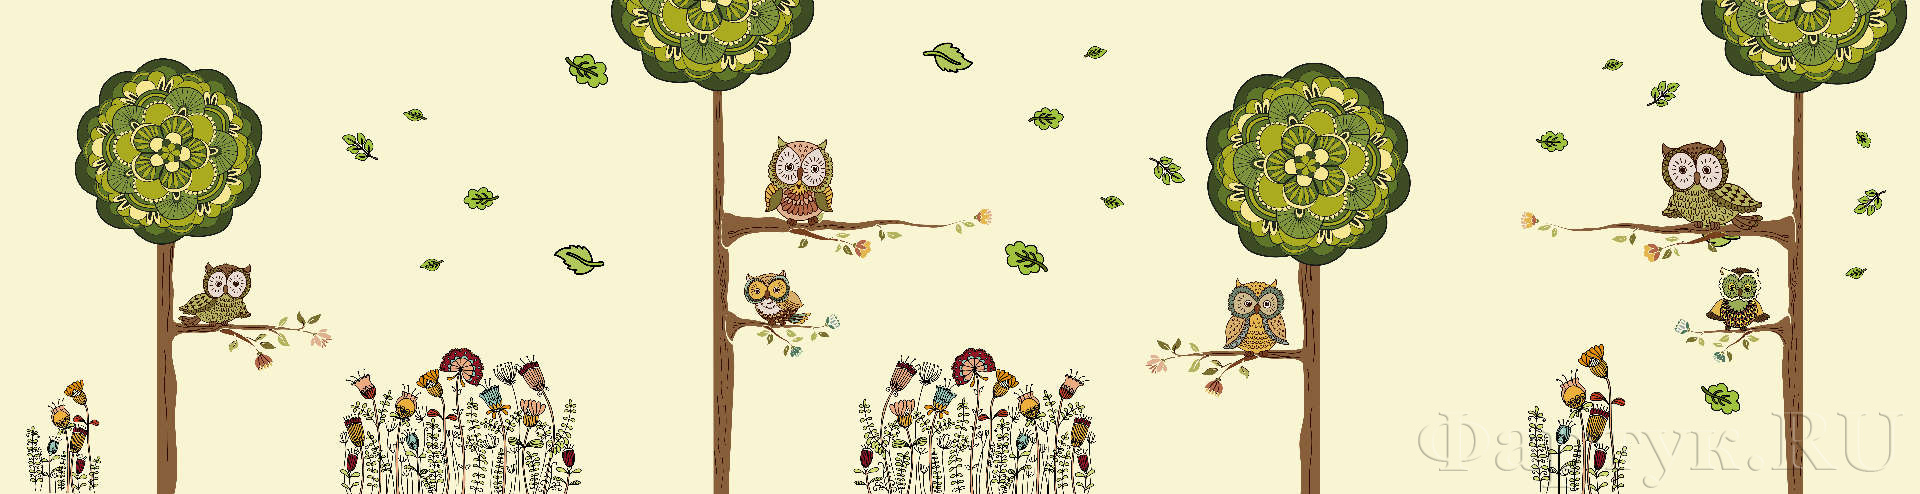 Мультяшные совы на деревьях